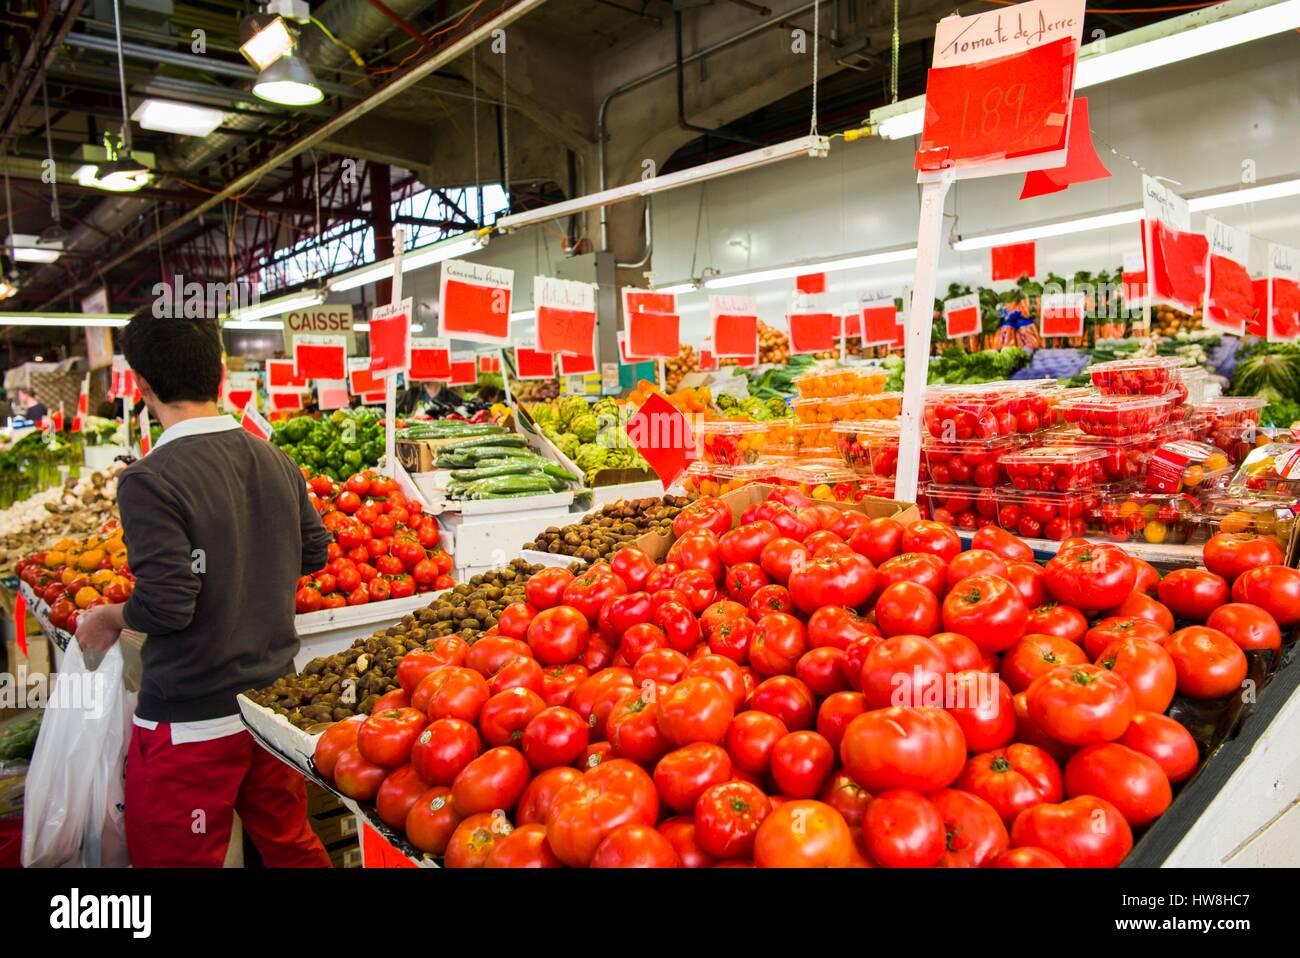 Canada, Quebec, Montreal, Marche Jean Talon market, tomatoes Stock Photo